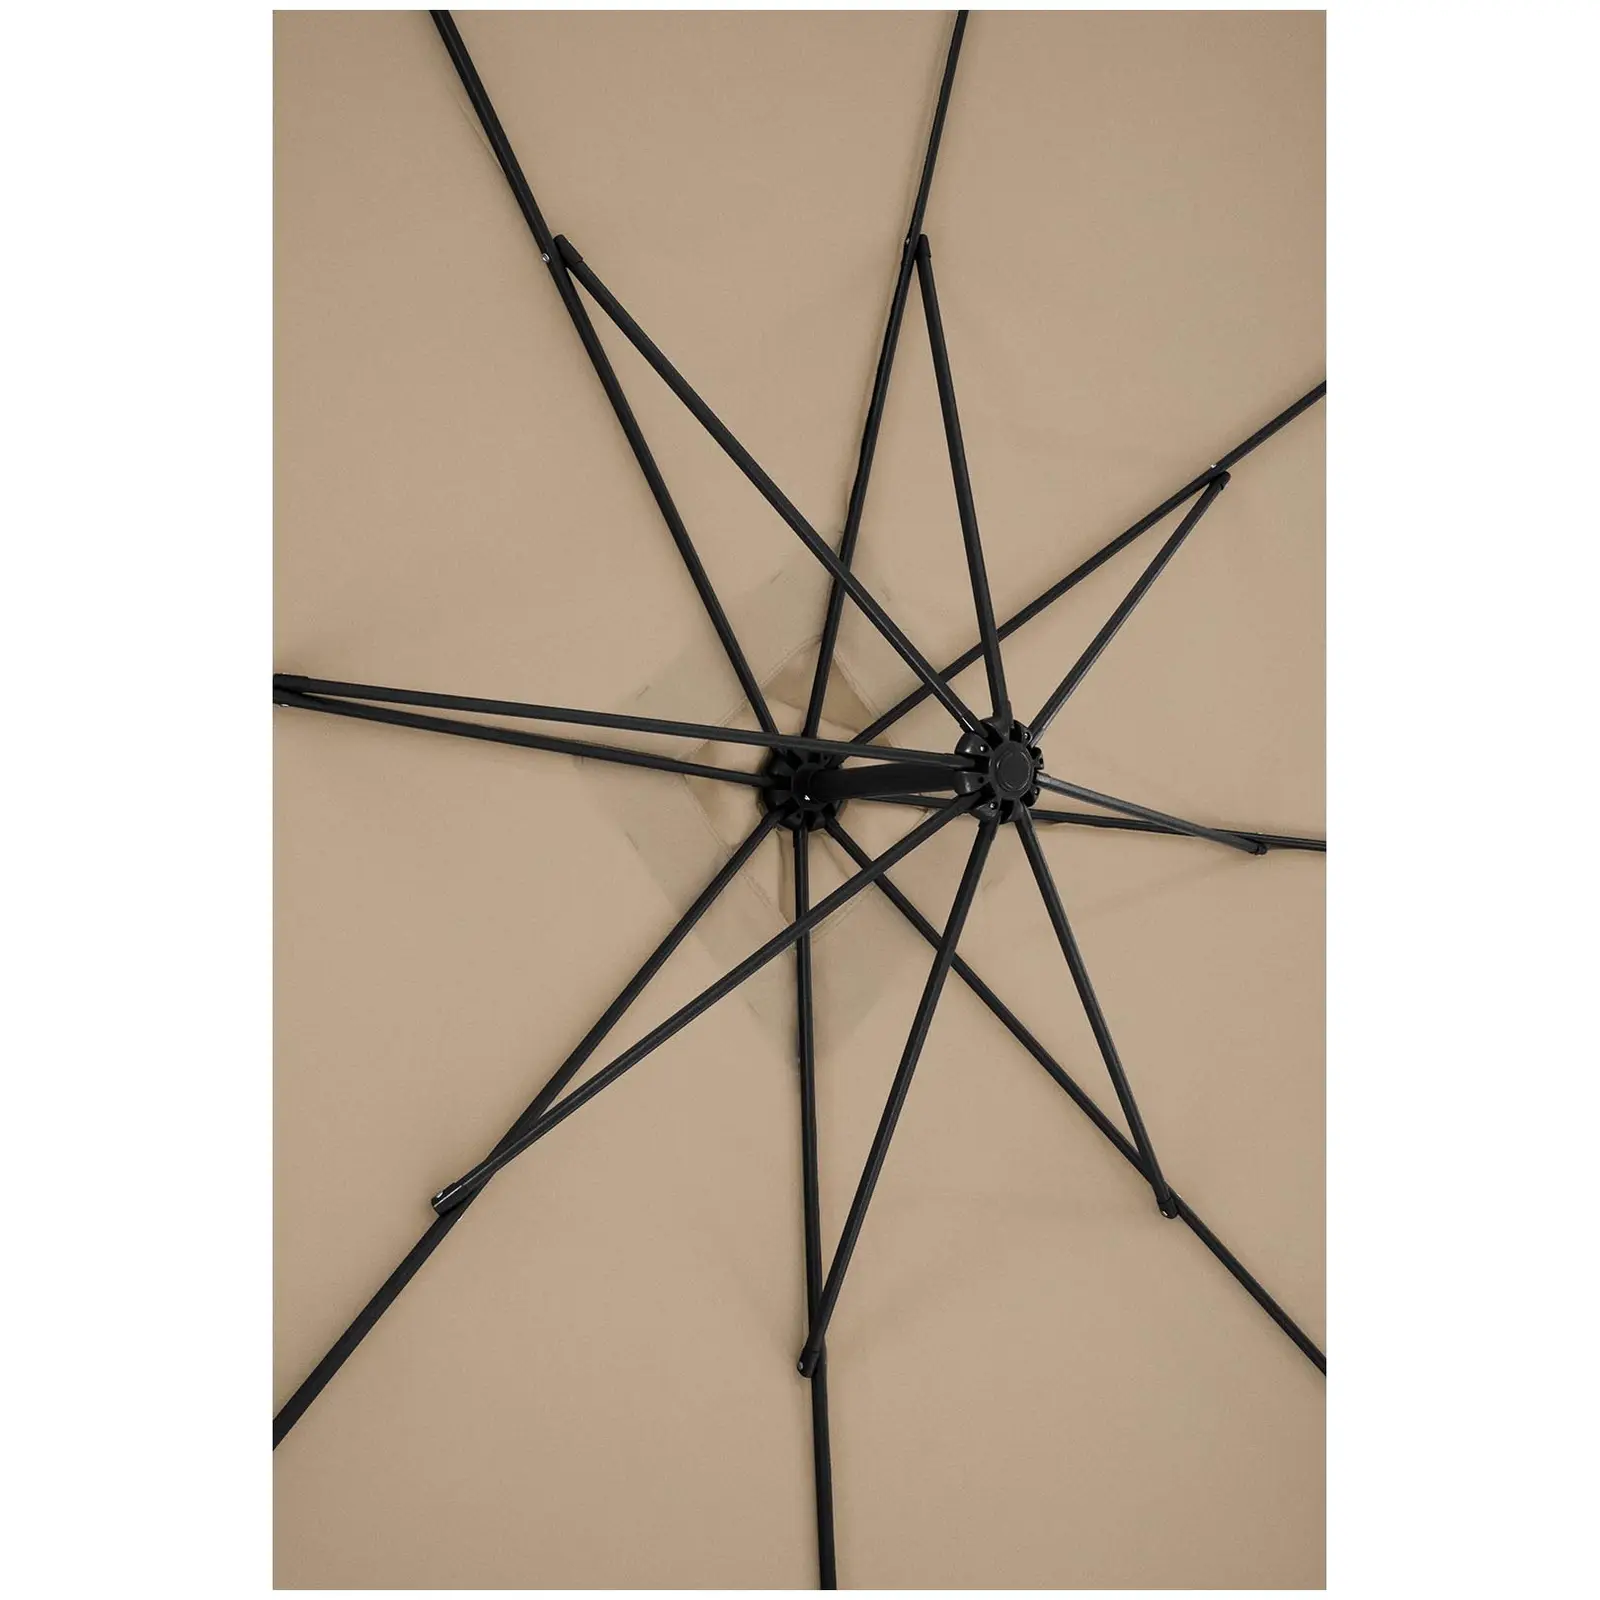 Occasion Parasol de jardin - Taupe - Carré - 250 x 250 cm - Inclinable